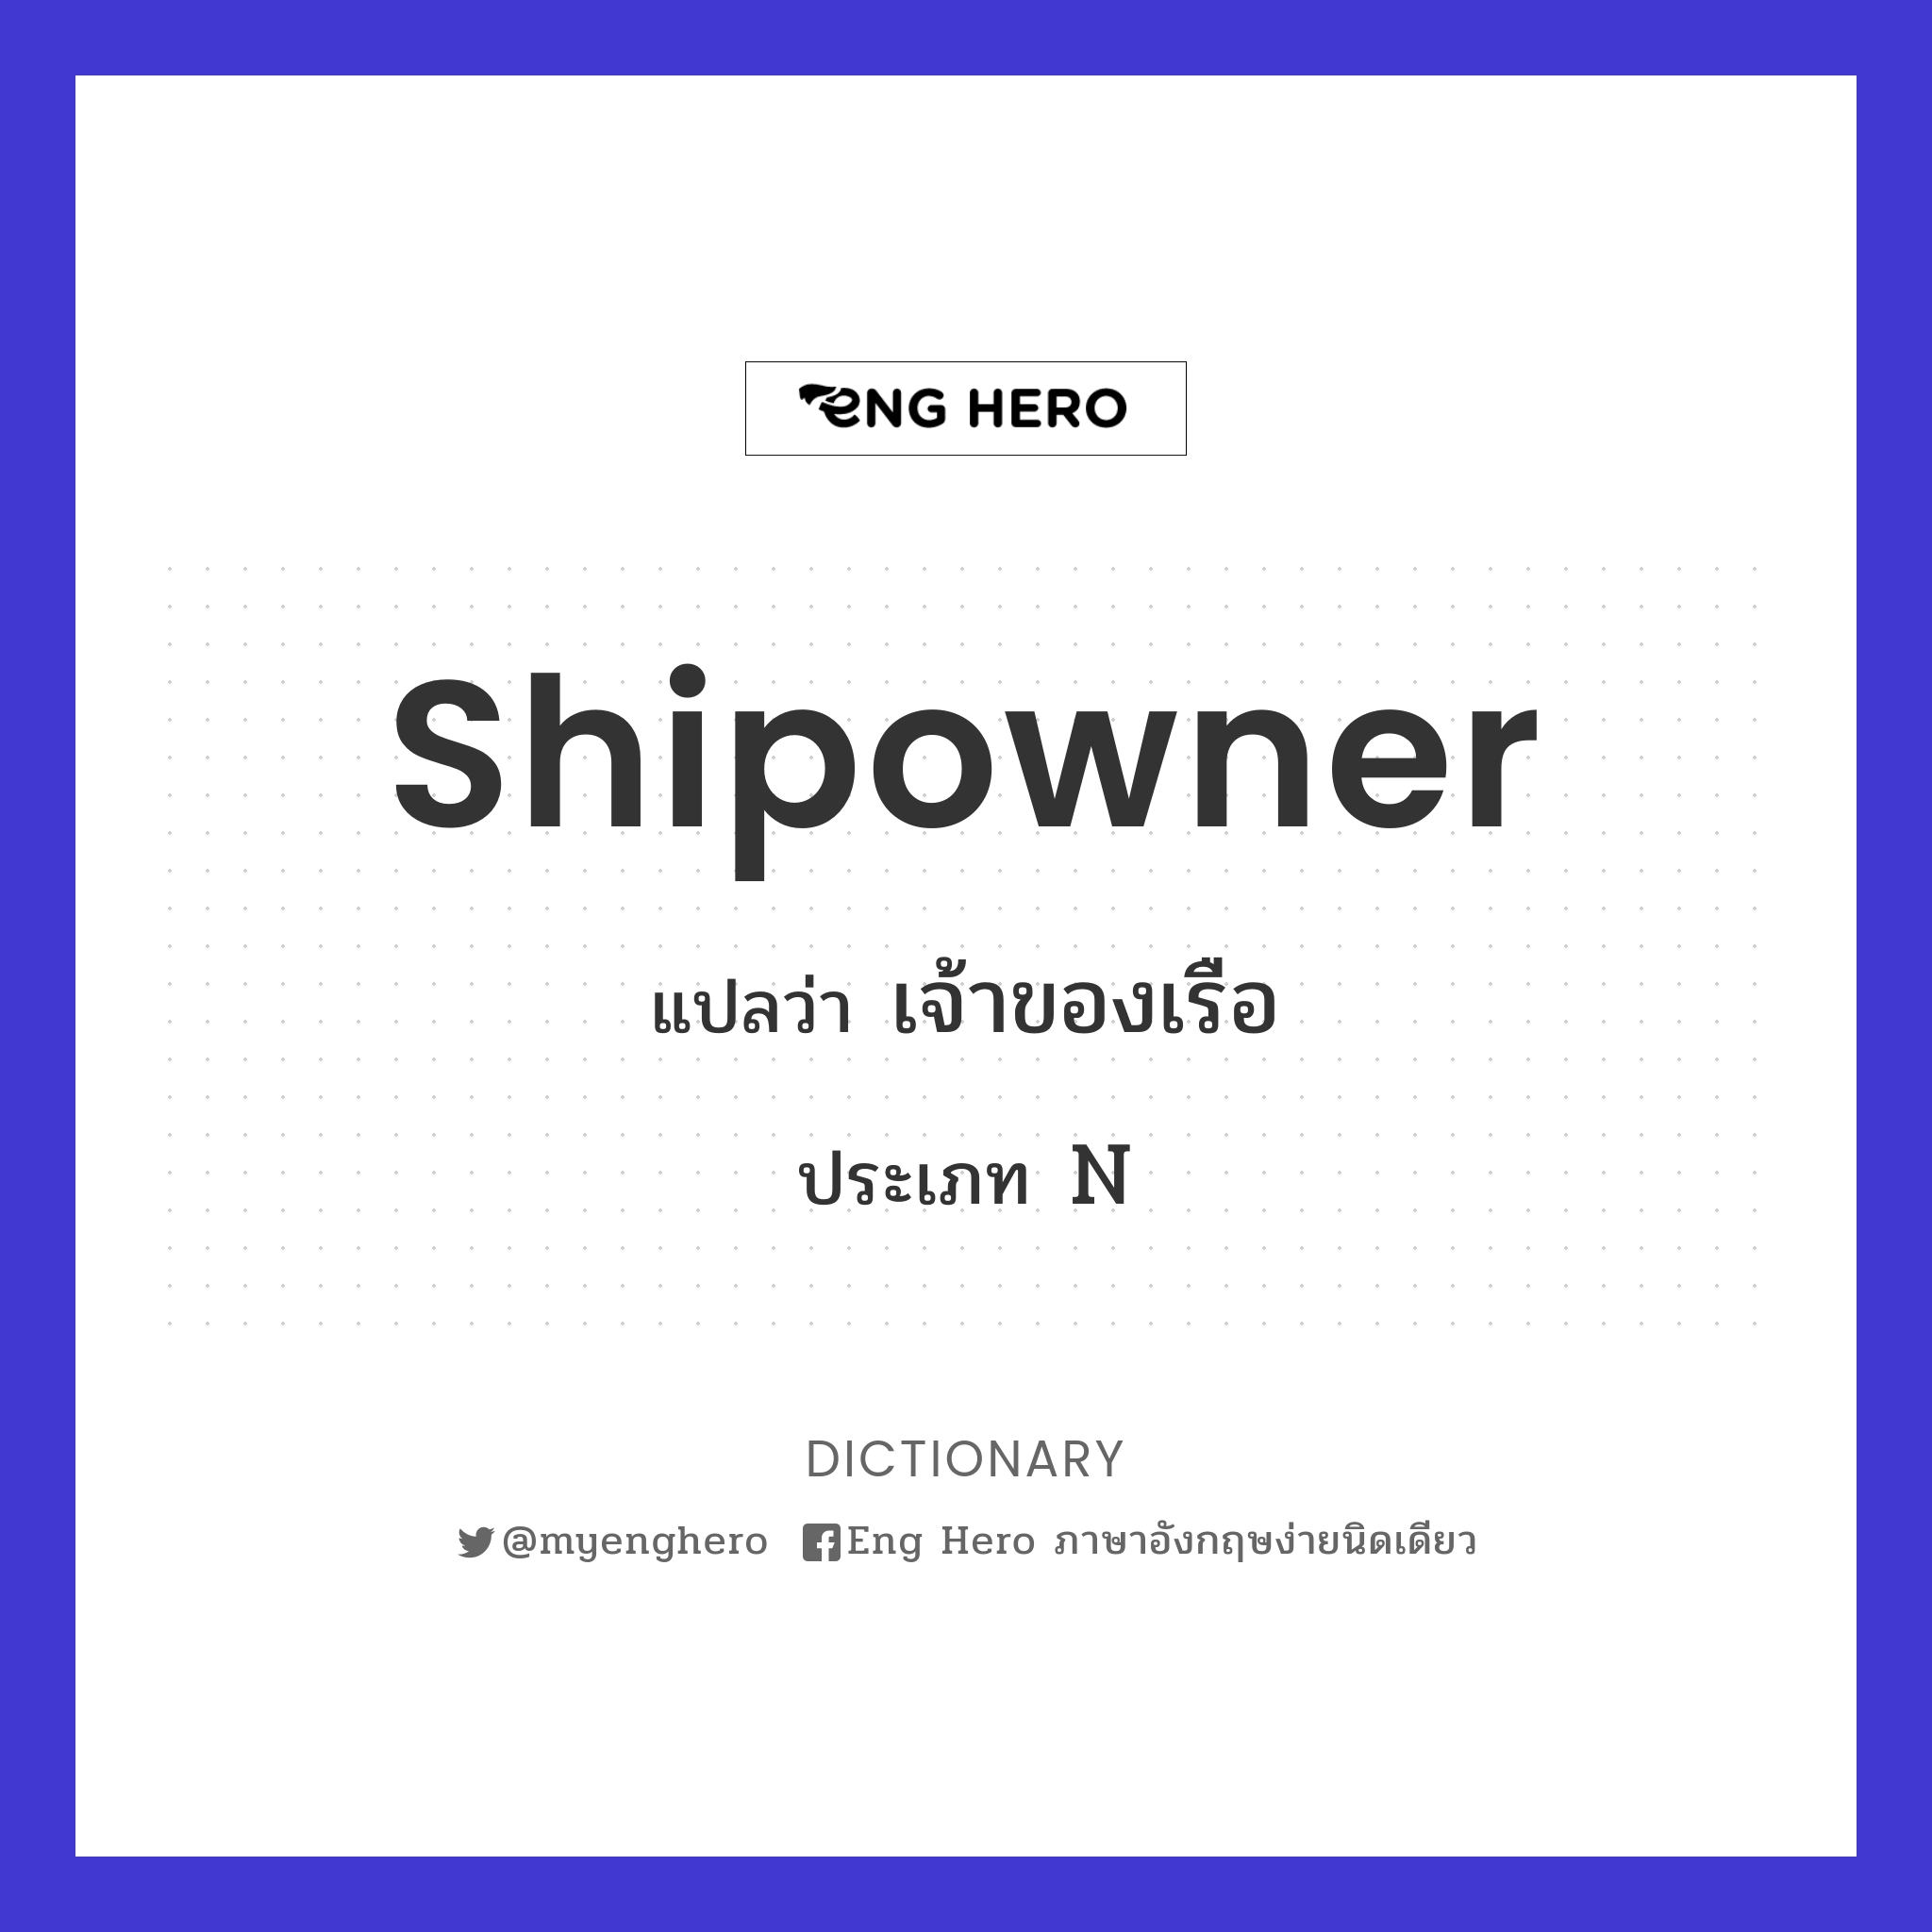 shipowner